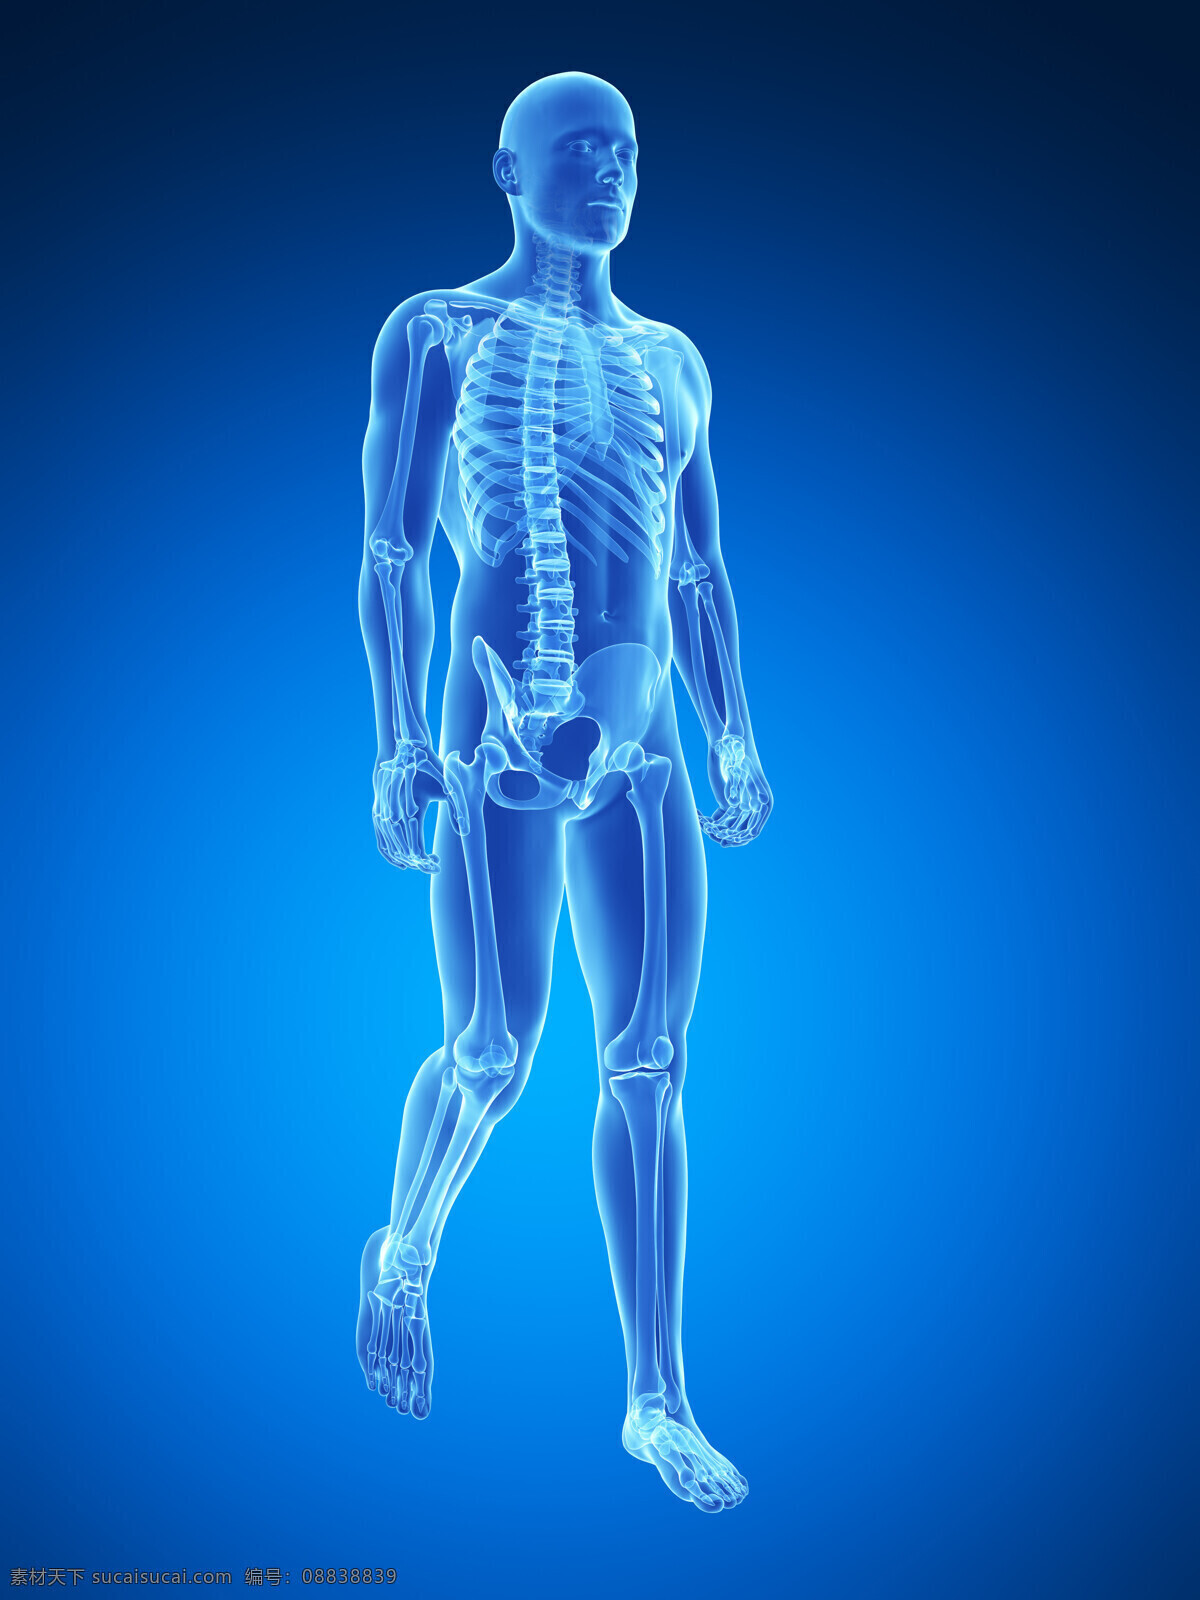 行走 男性 人体 骨骼 结构 男性骨骼 人体骨骼结构 骨骼组织 人体骨骼 人体器官 医疗 医学 医疗护理 现代科技